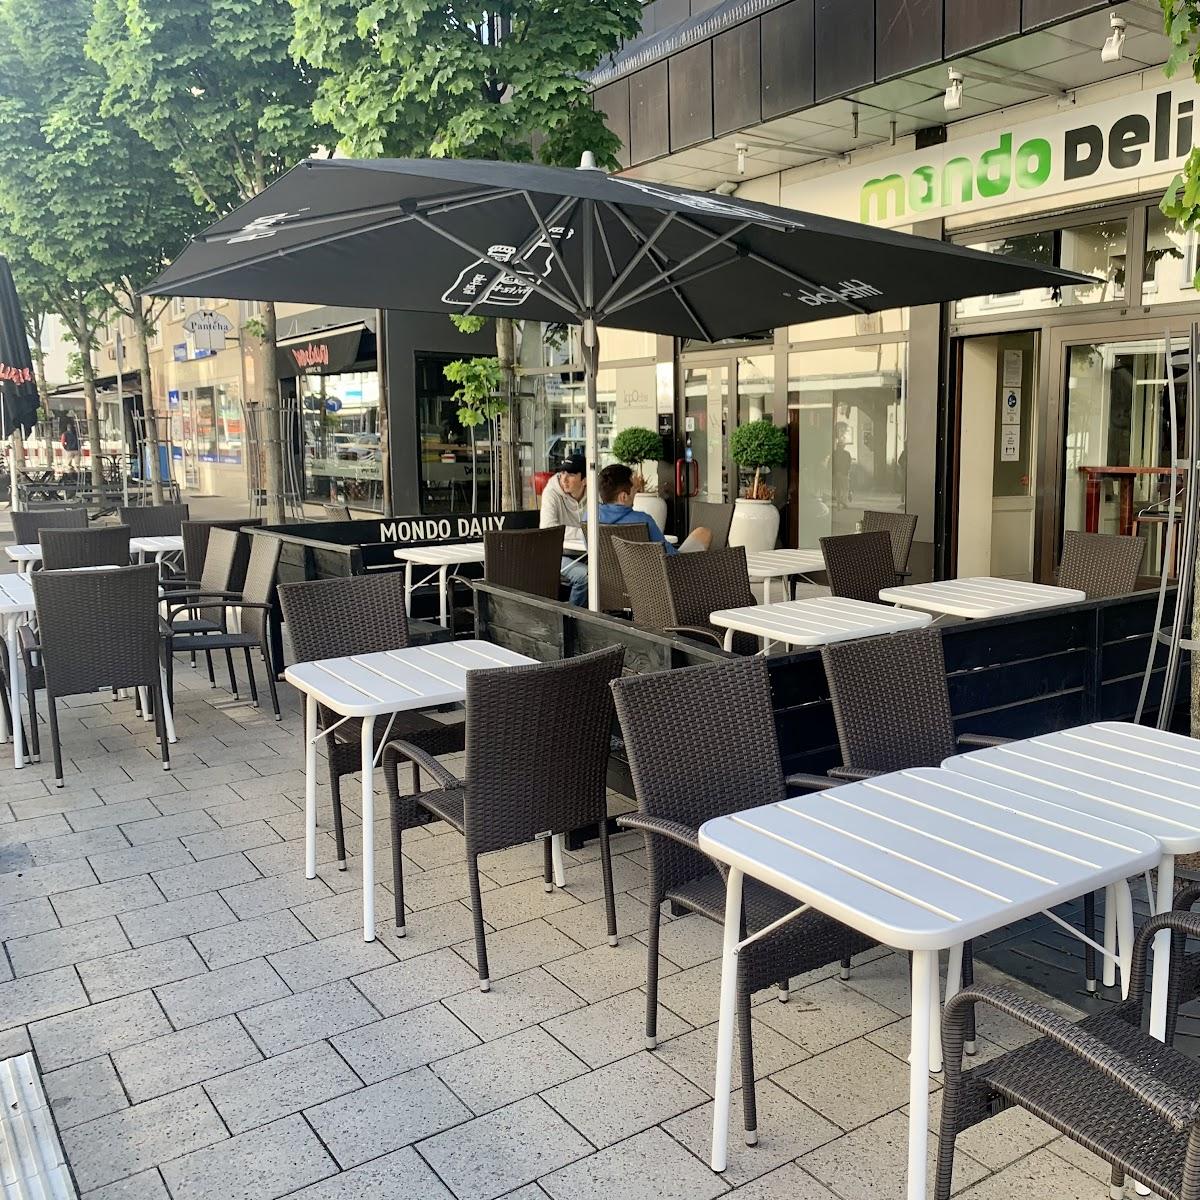 Restaurant "Mondo Daily" in Darmstadt